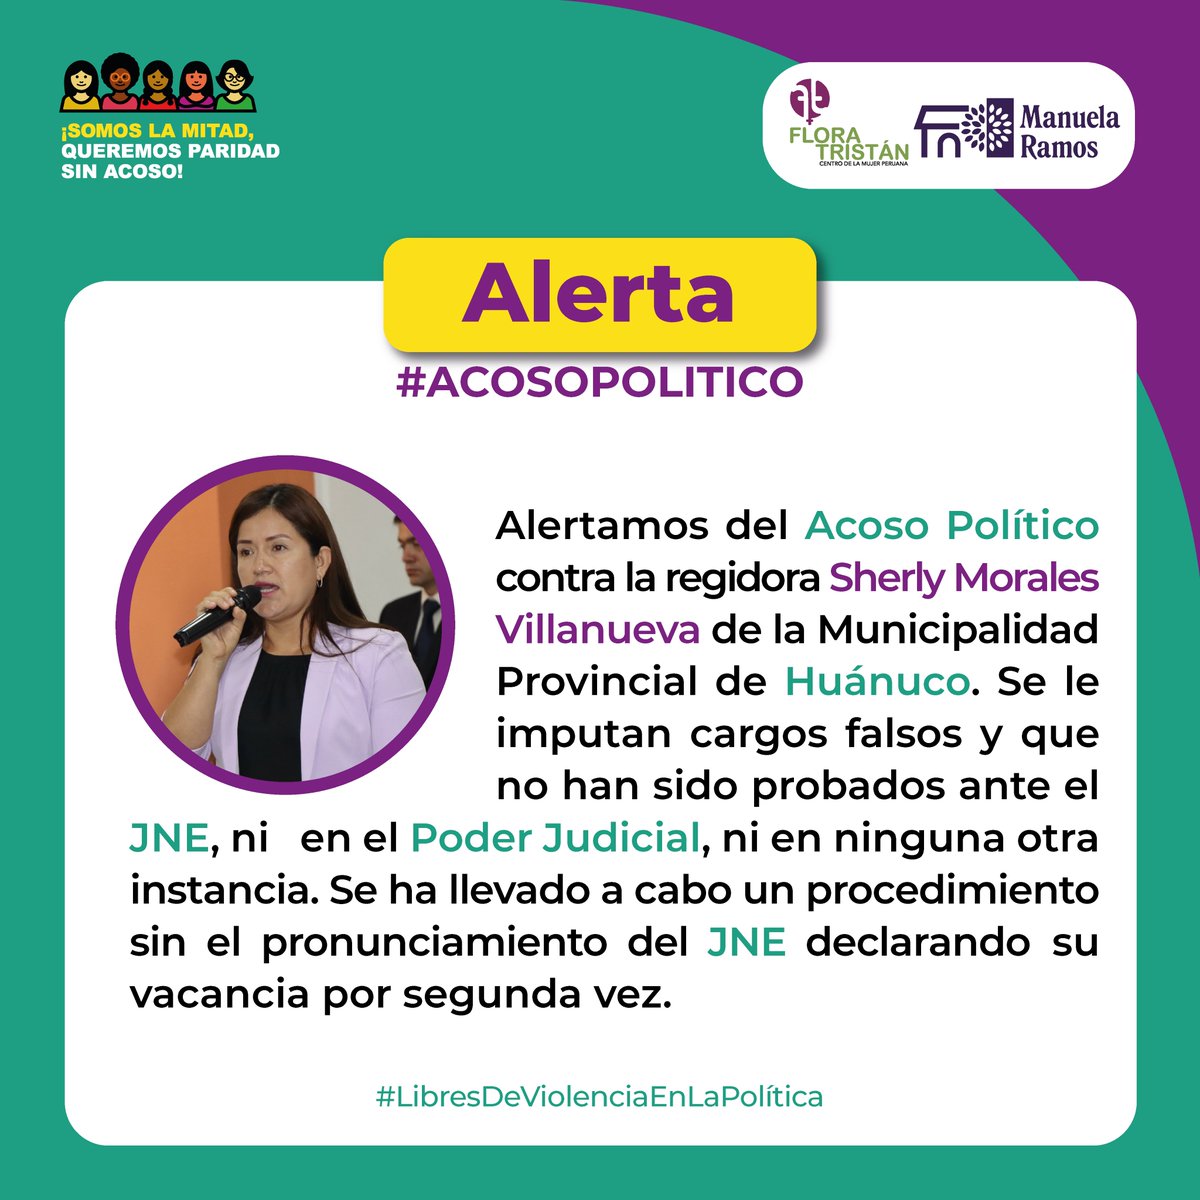 🇵🇪🚨#ALERTA #AcosoPolítico La regidora de la Municipalidad Provincial de Huánuco, Sherly Morales Villanueva, ha sido vacada de su cargo. Lamentamos que el @JNE_Peru no se haya pronunciado sobre este hecho.